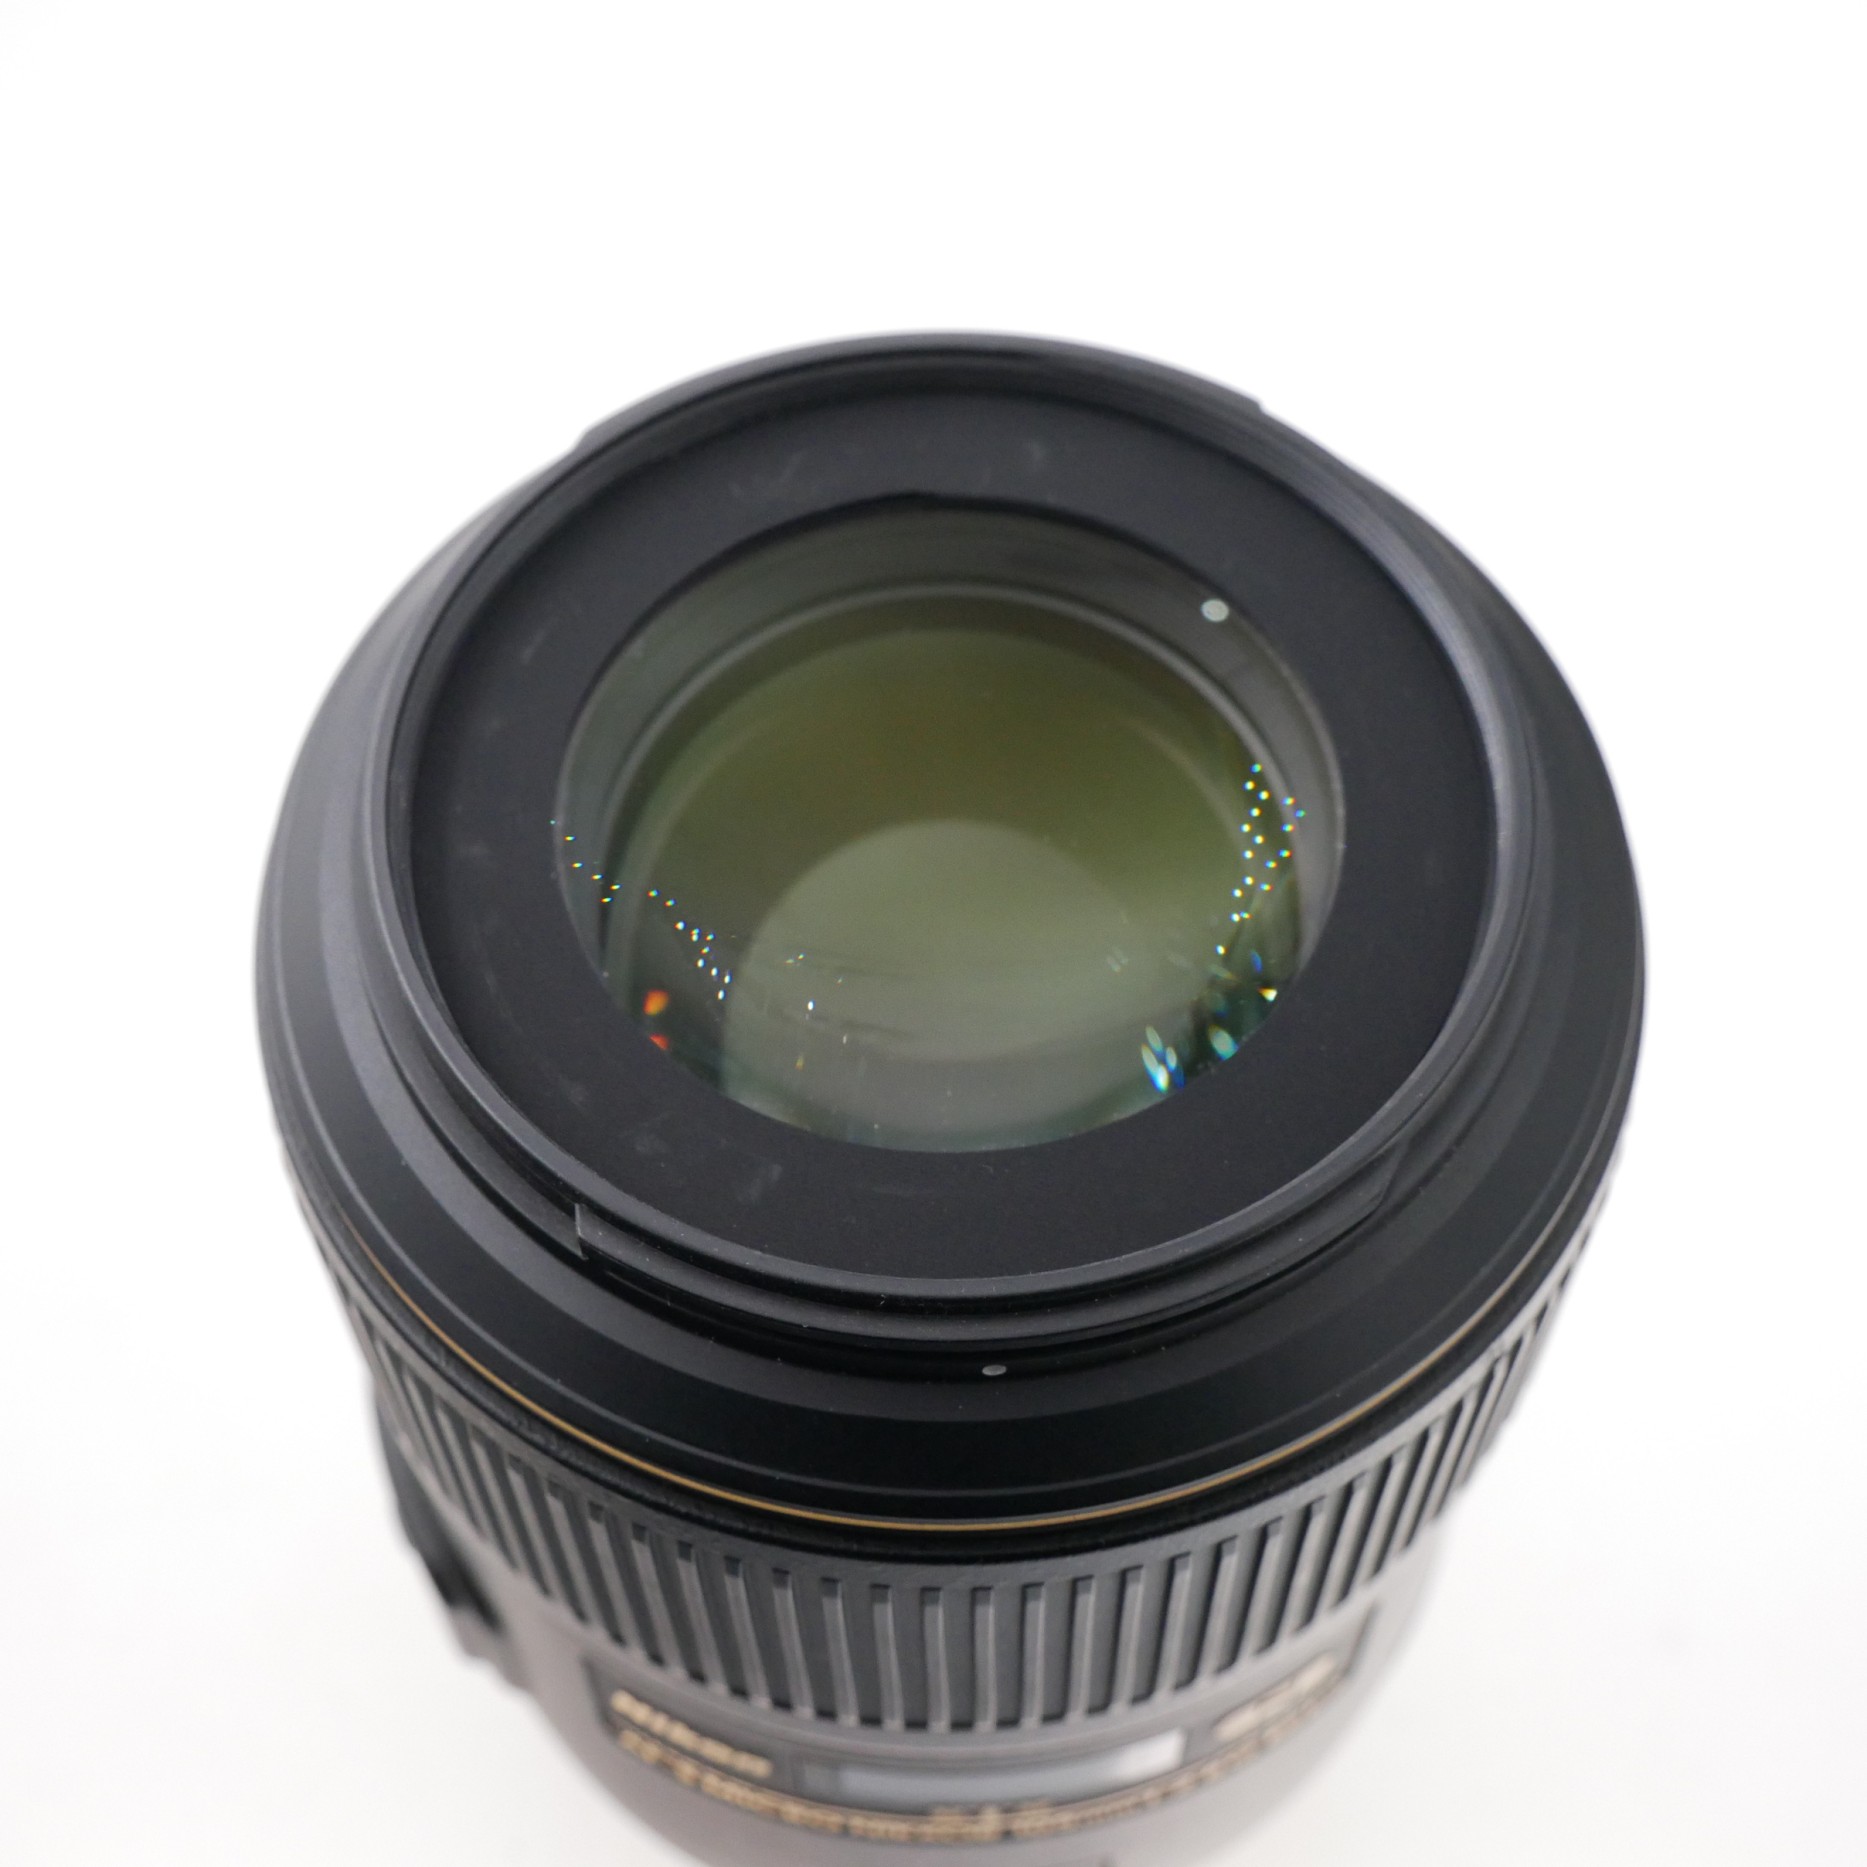 S-H-N8KKA8_2.jpg - Nikon AF-S VR Micro 105mm F2.8 G IF-ED Lens 